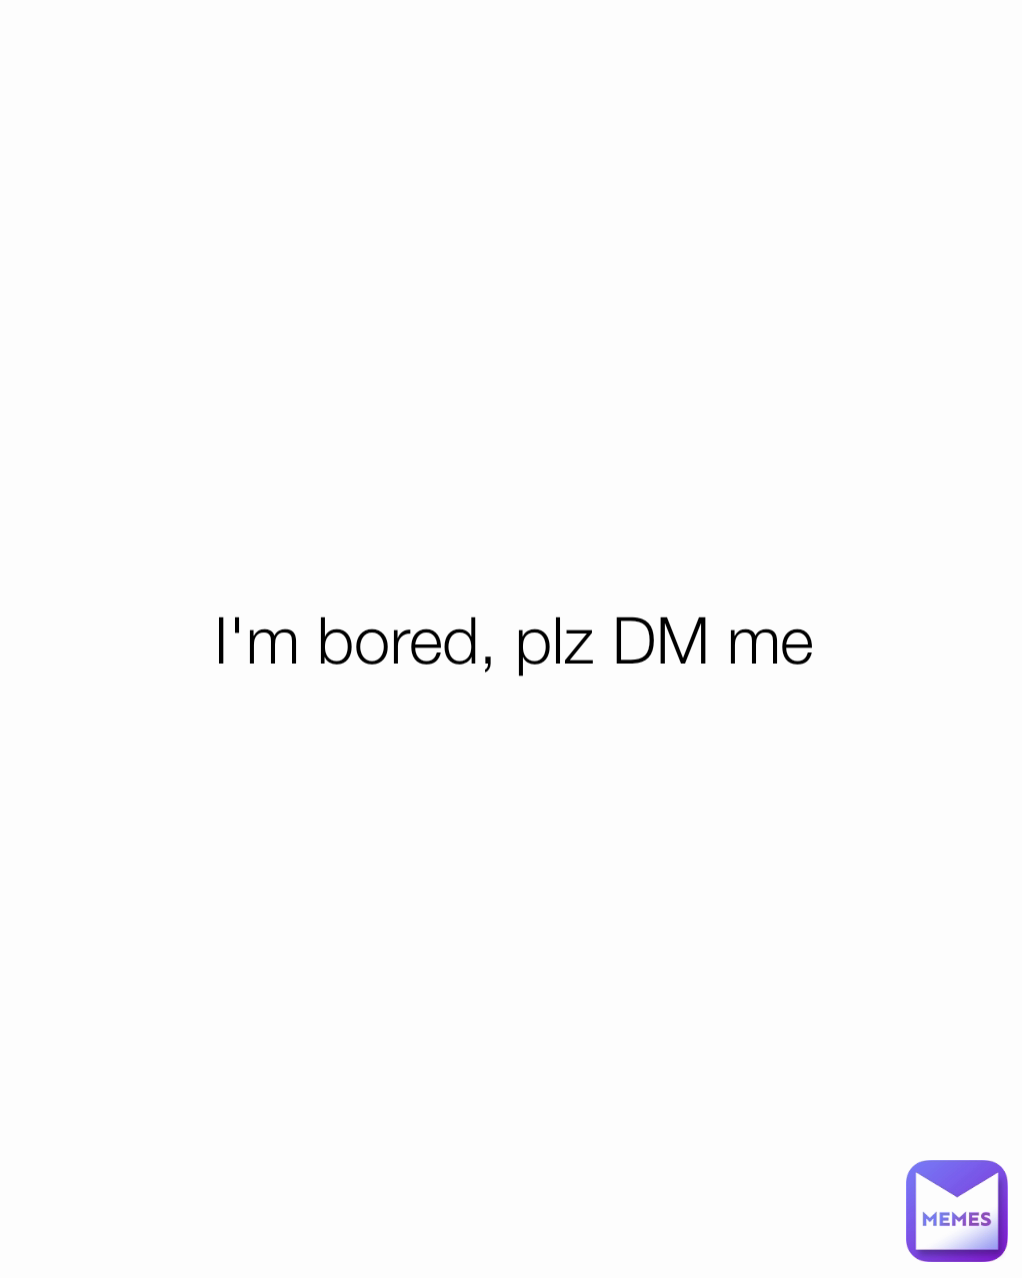 I'm bored, plz DM me